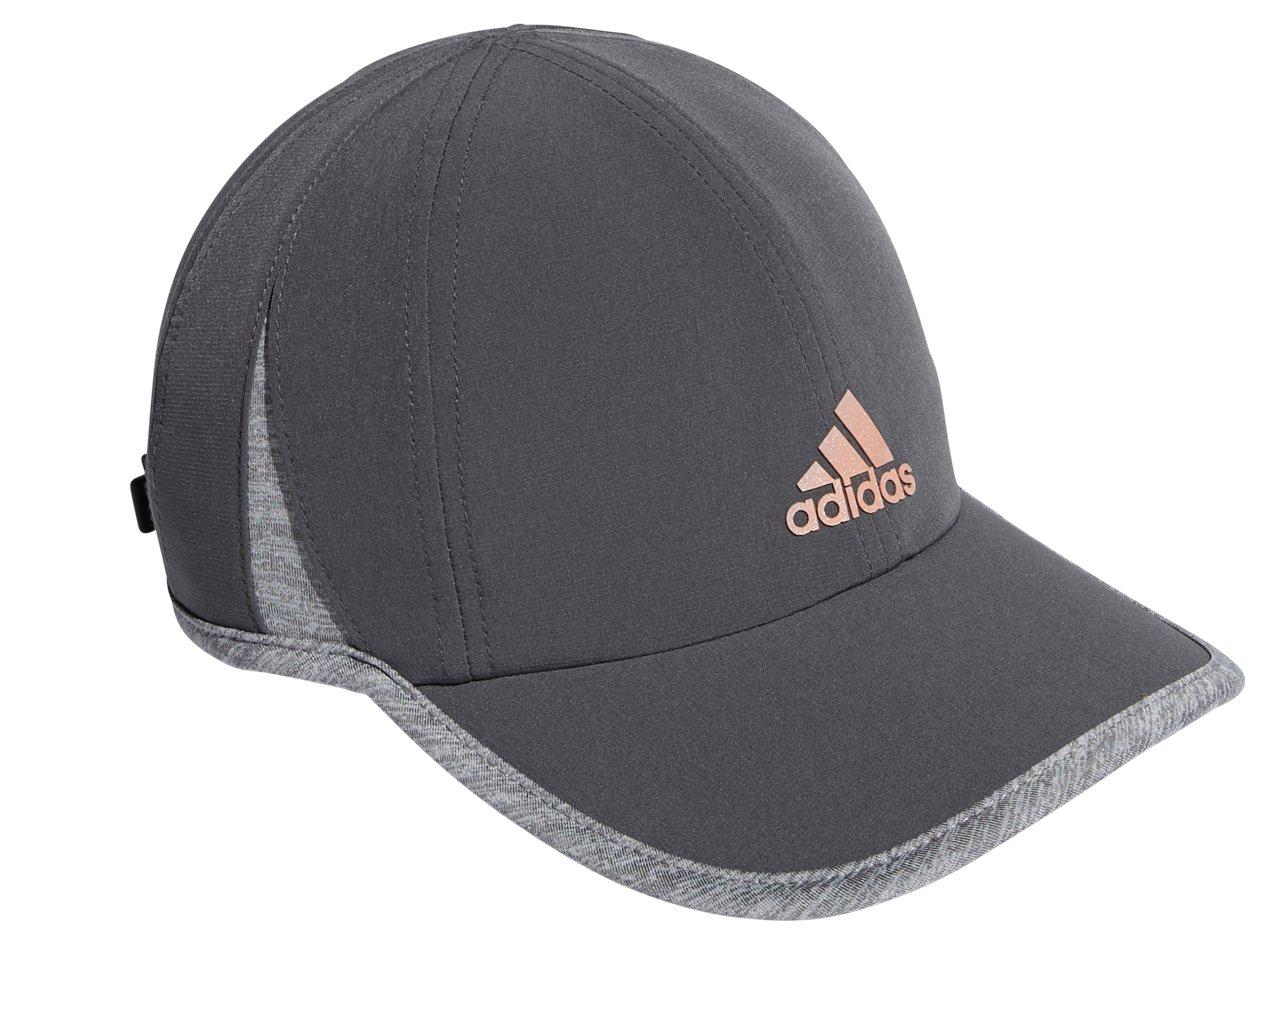 Adidas Women's Adidas Superlite Adjustable Cap